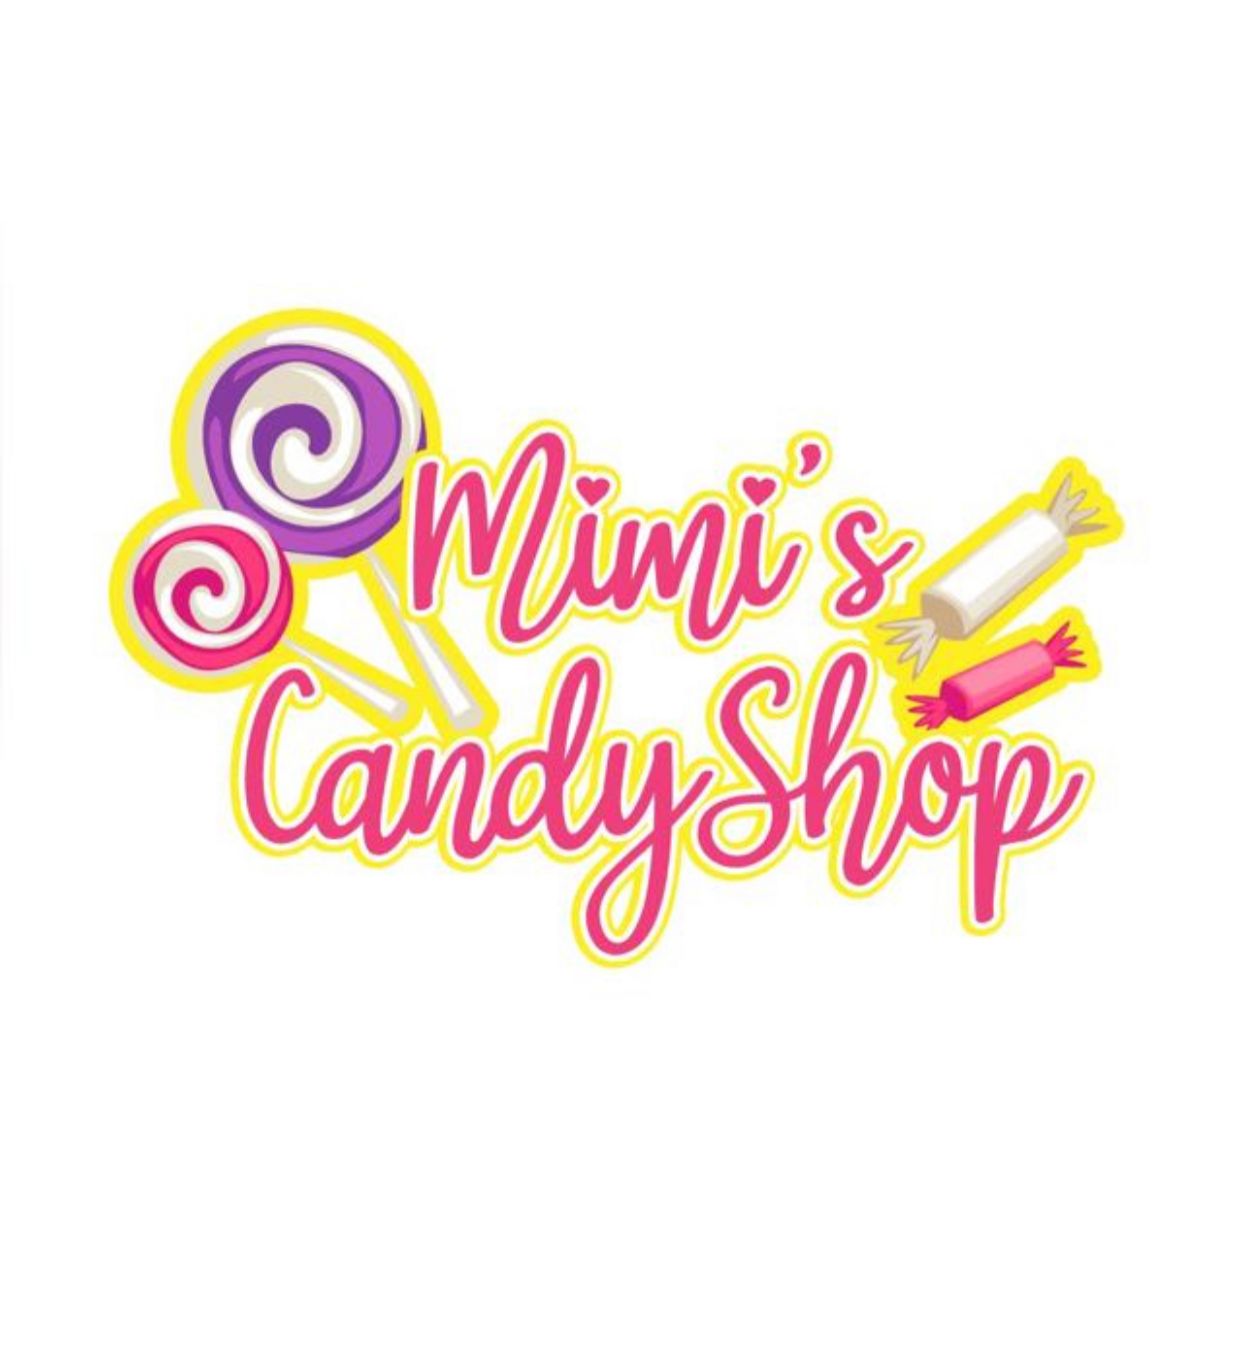 Mimi’s candyshop